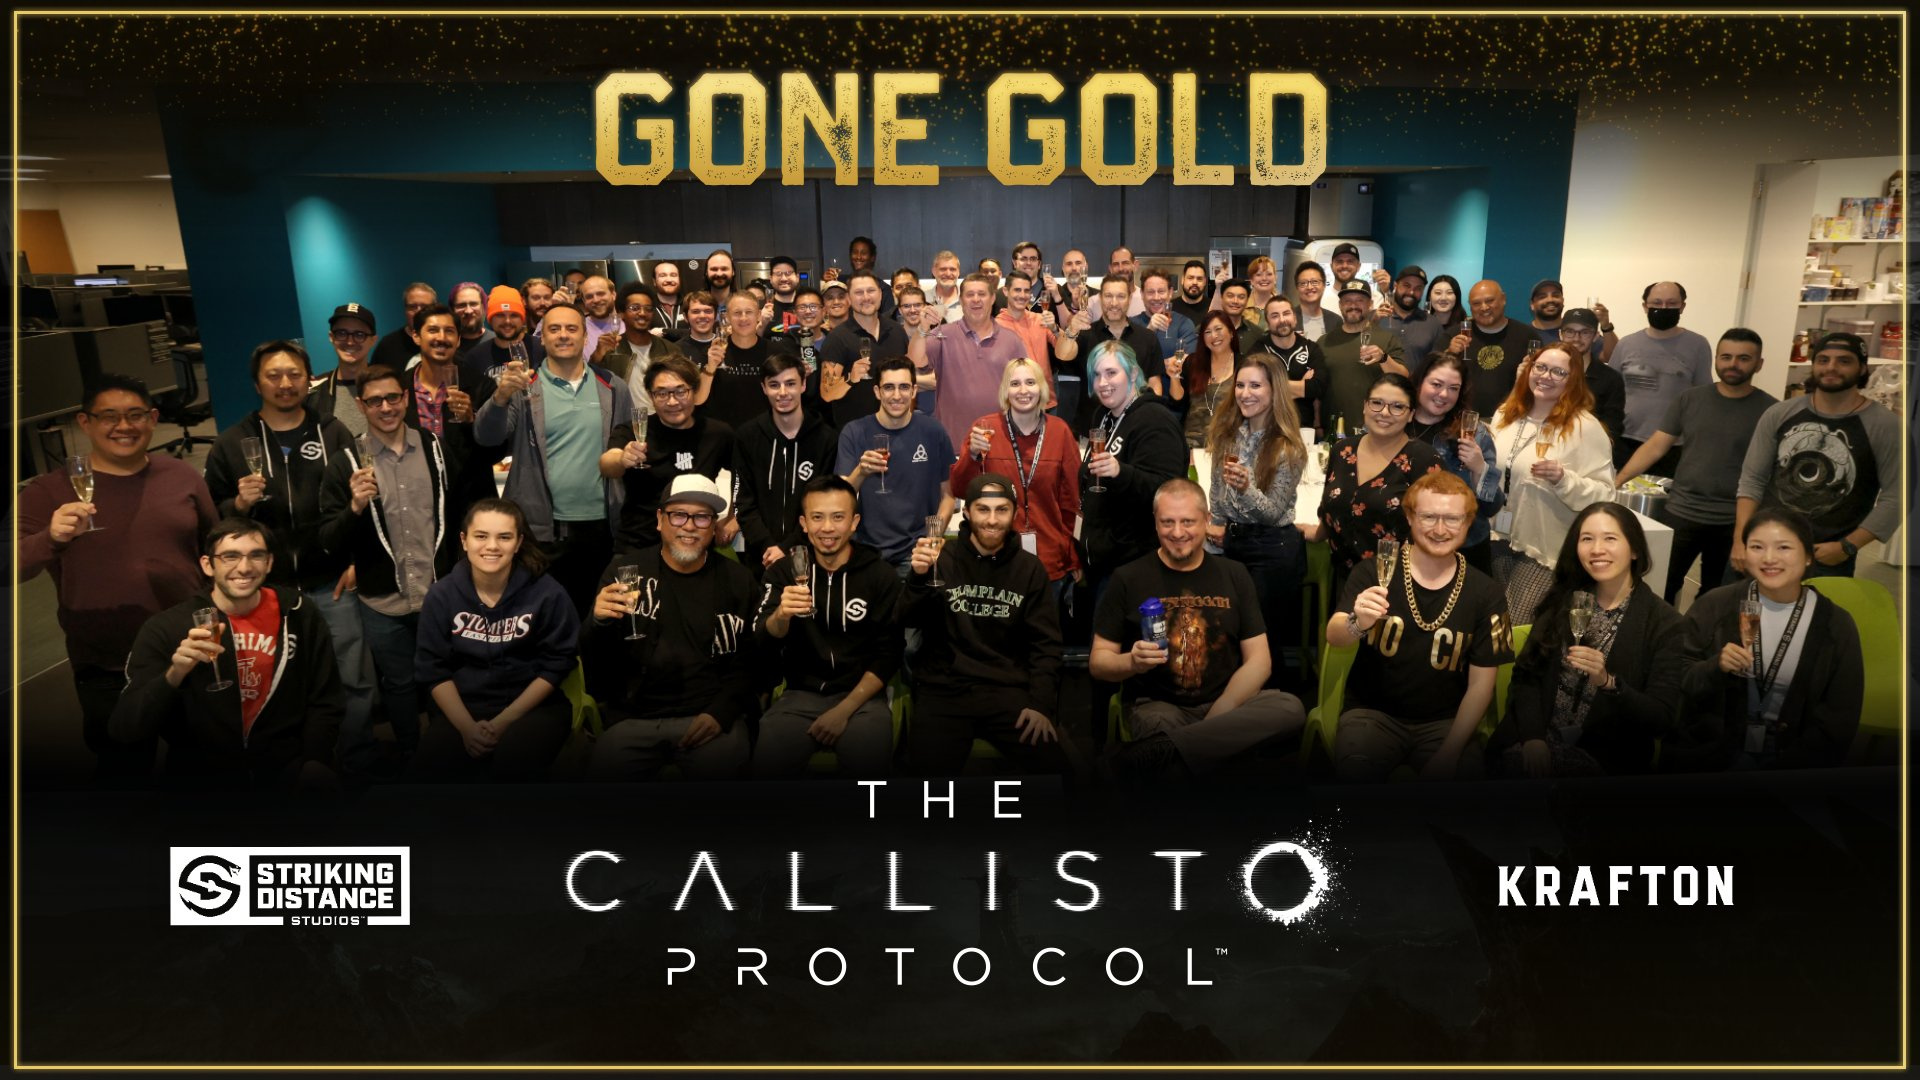 Бледная копия Dead Space»: первые оценки The Callisto Protocol